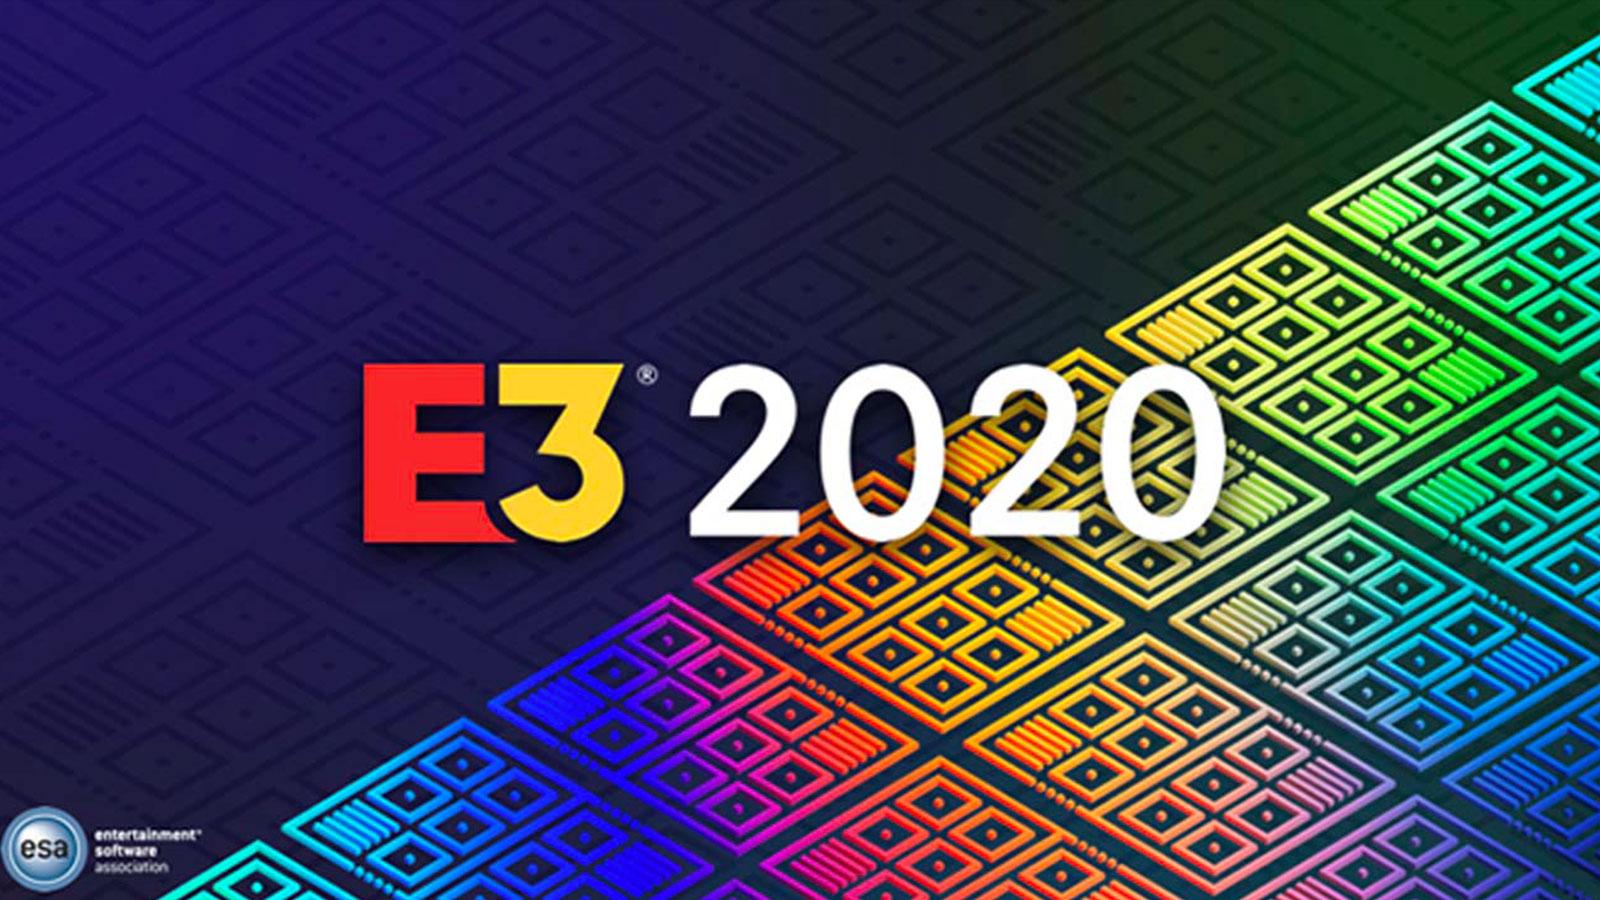 A son tour, l'E3 2020 se retrouve menacé